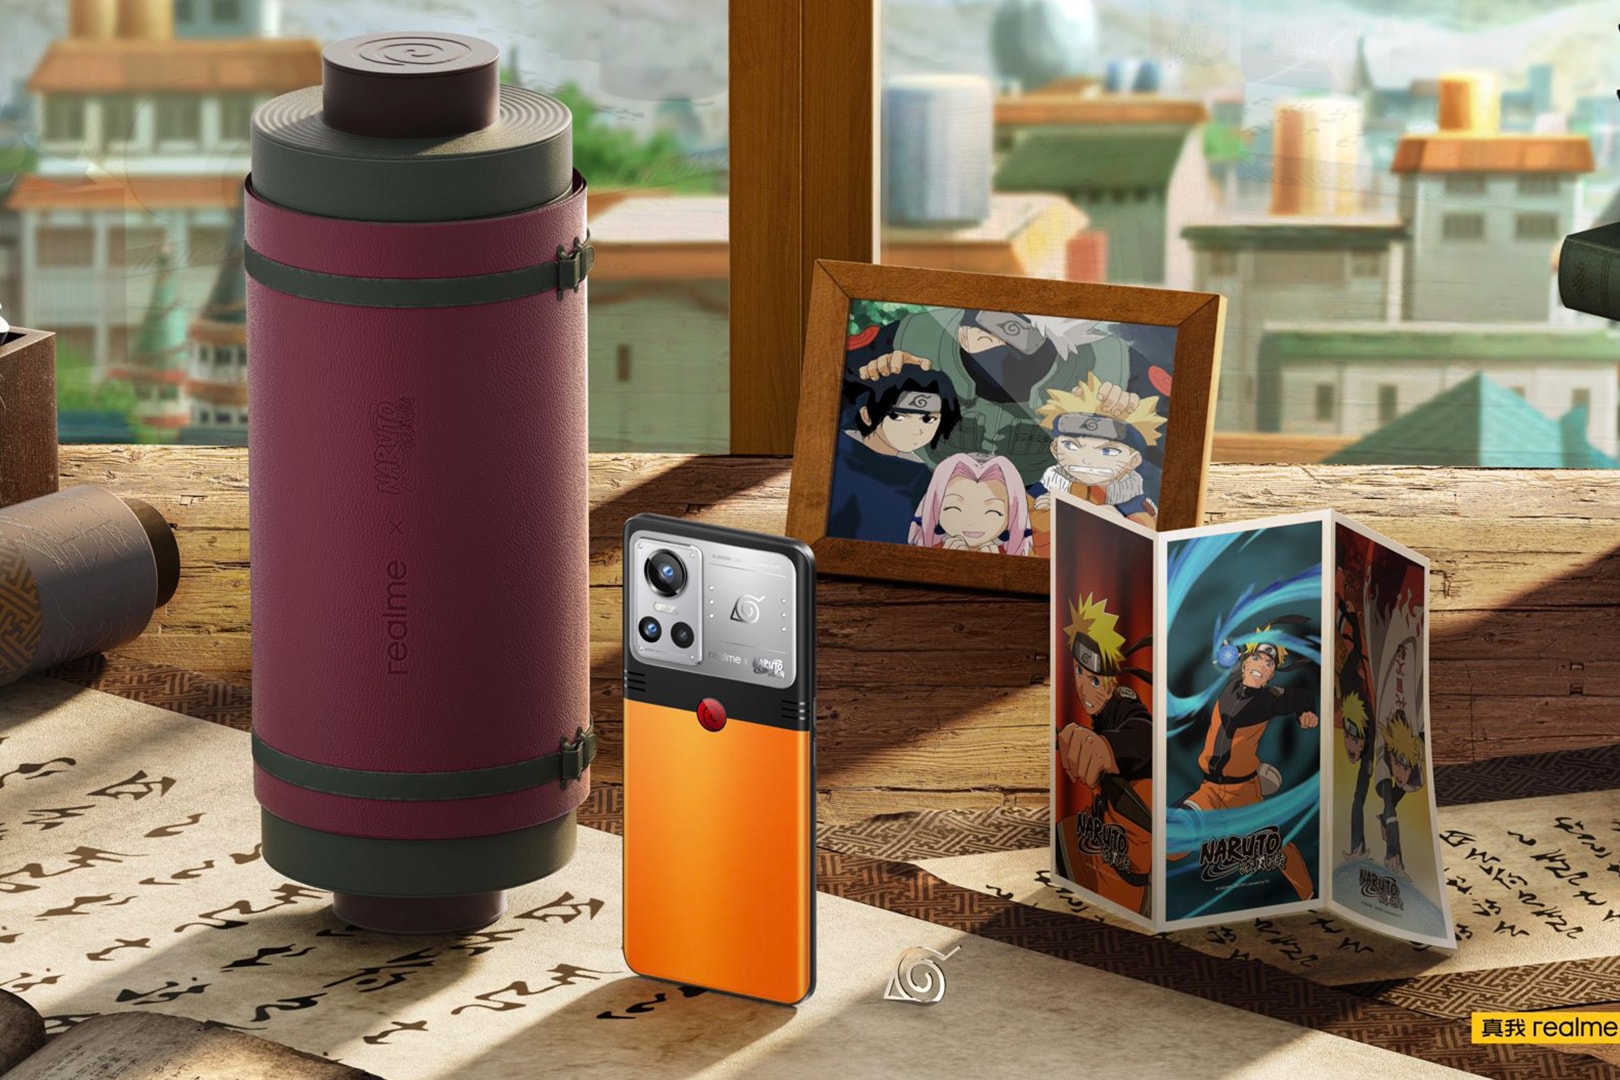 Realme GT Neo3 Smartpone Naruto Edition release anime manga shippuden Masashi Kishimoto Shueisha 